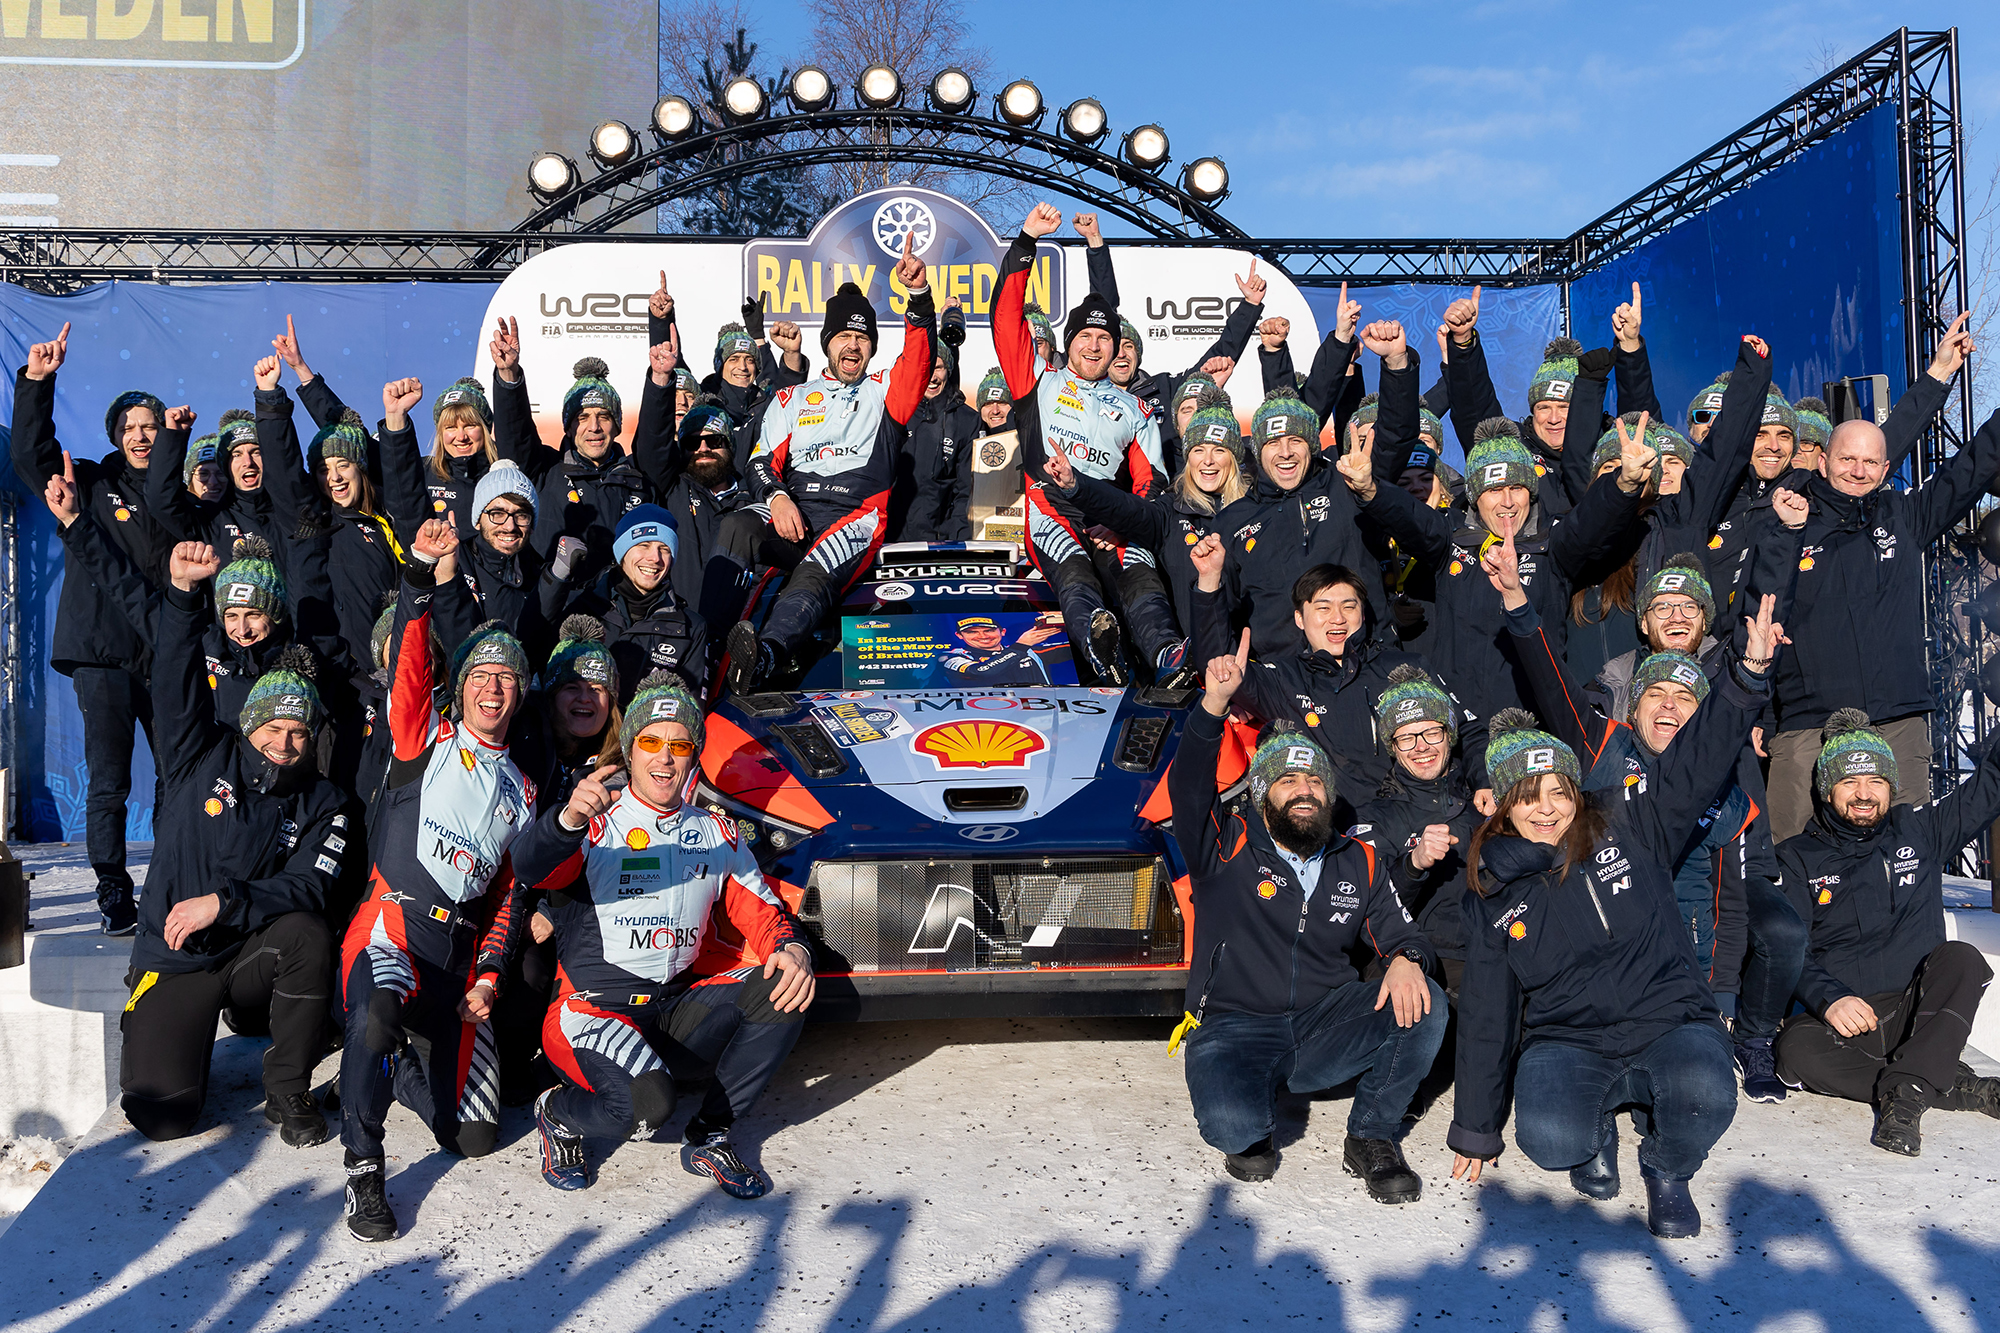 Sieg für Esappekka Lappi/Janne Ferm und das Hyundai-Team bei der Rallye Schweden (Bild: Fabien Dufour/Hyundai Motorsport GmbH)